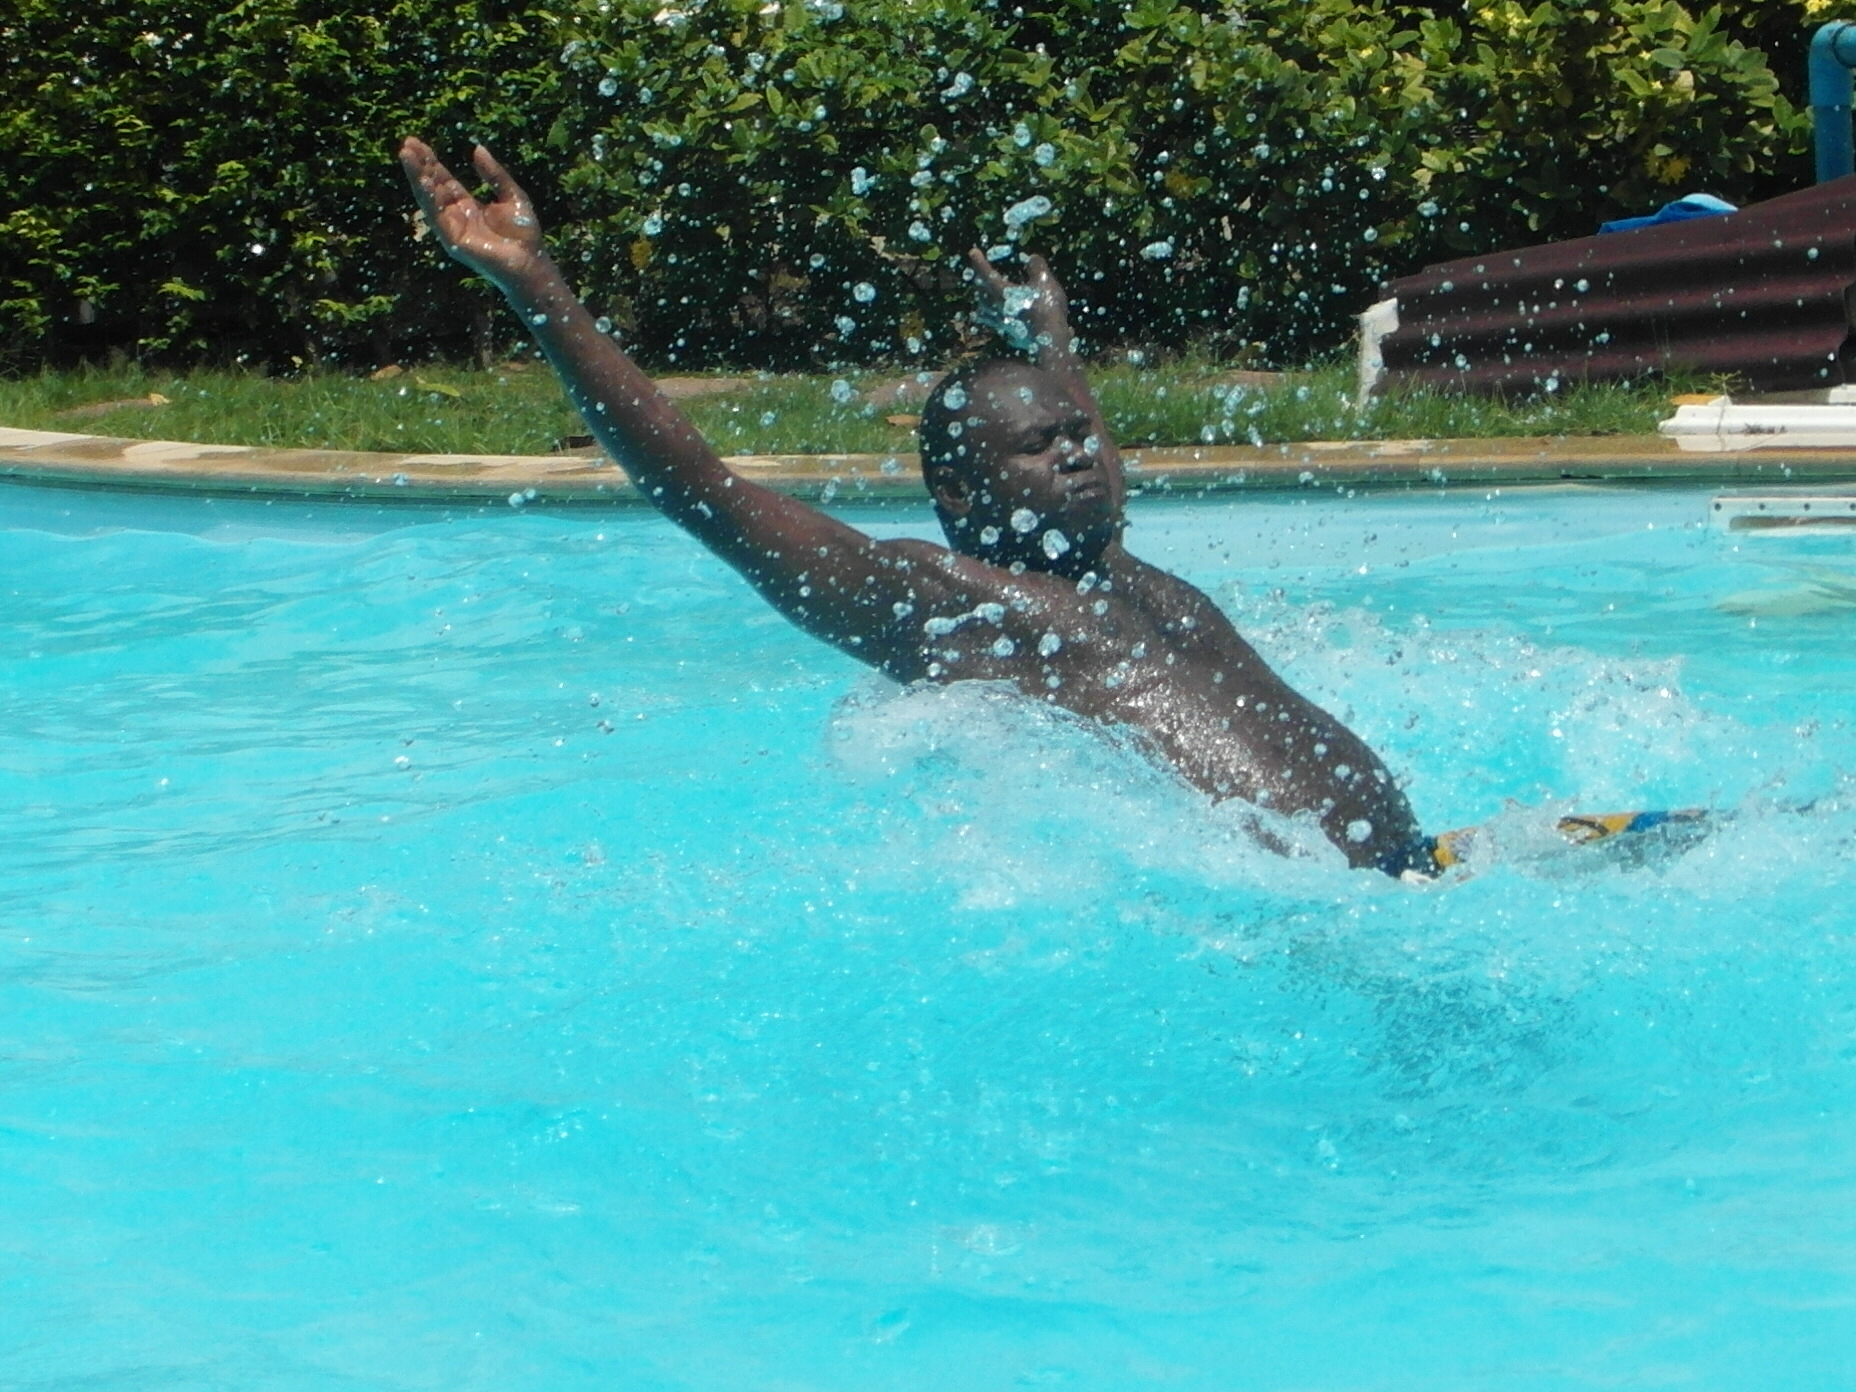 Man splashing in the swimming pool photo